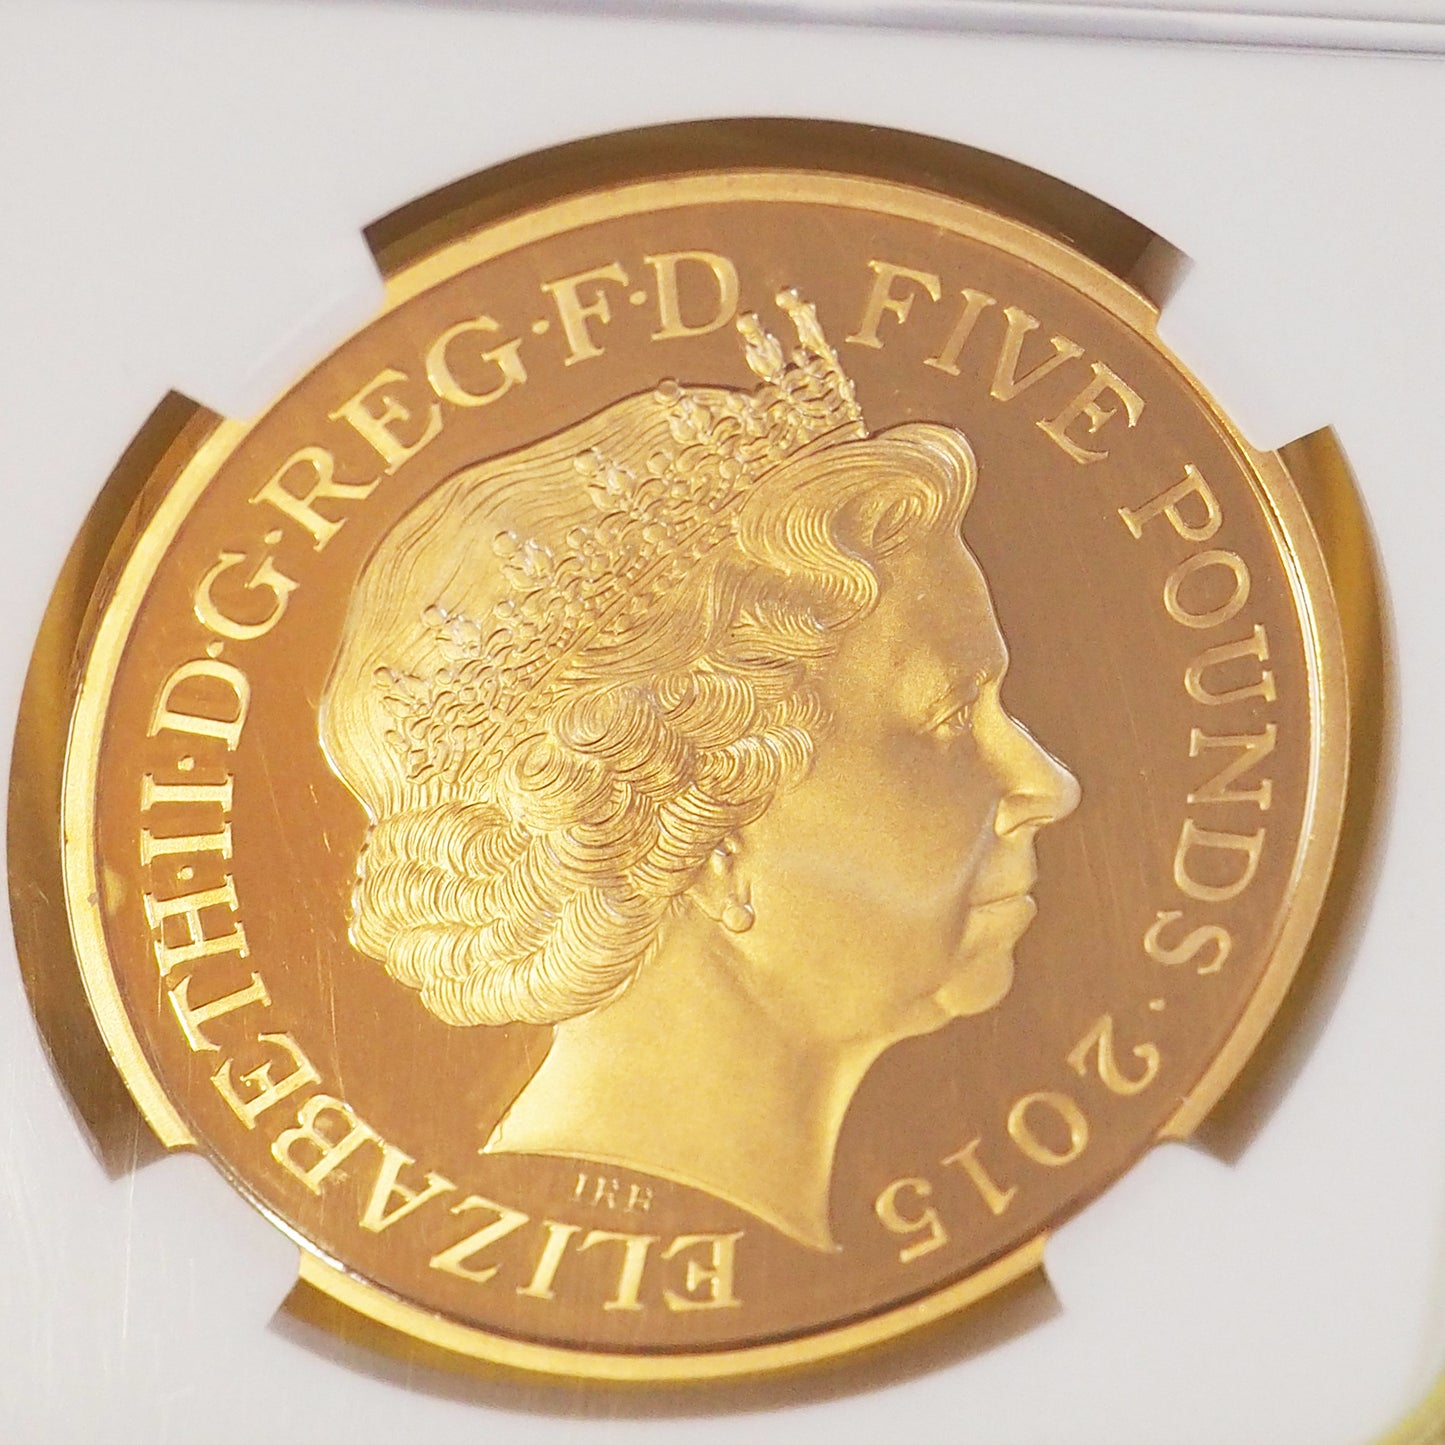 【プルーフ最高鑑定】イギリス 5ポンド金貨 ウィンストン・チャーチル エリザベス2世 2015 PF70 ULTRA CAMEO